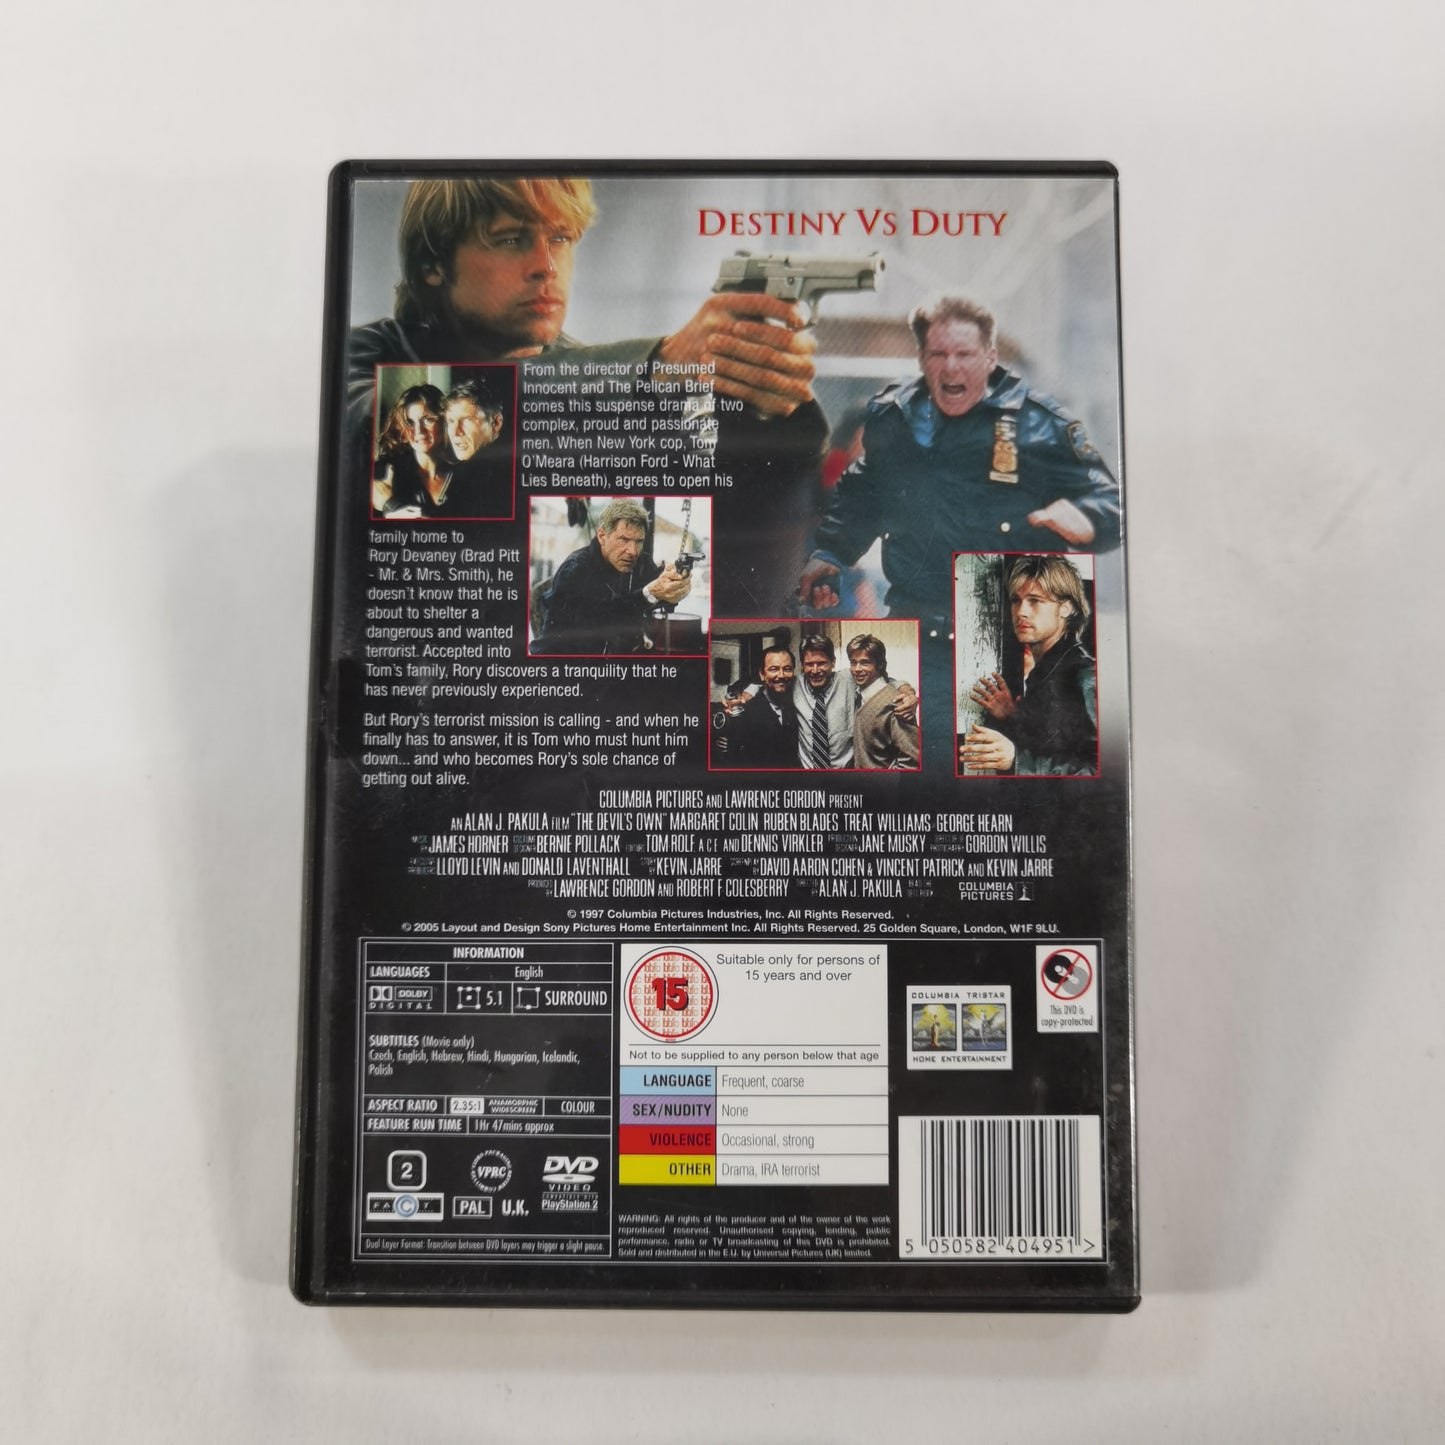 The Devil's Own (1997) - DVD UK 2005